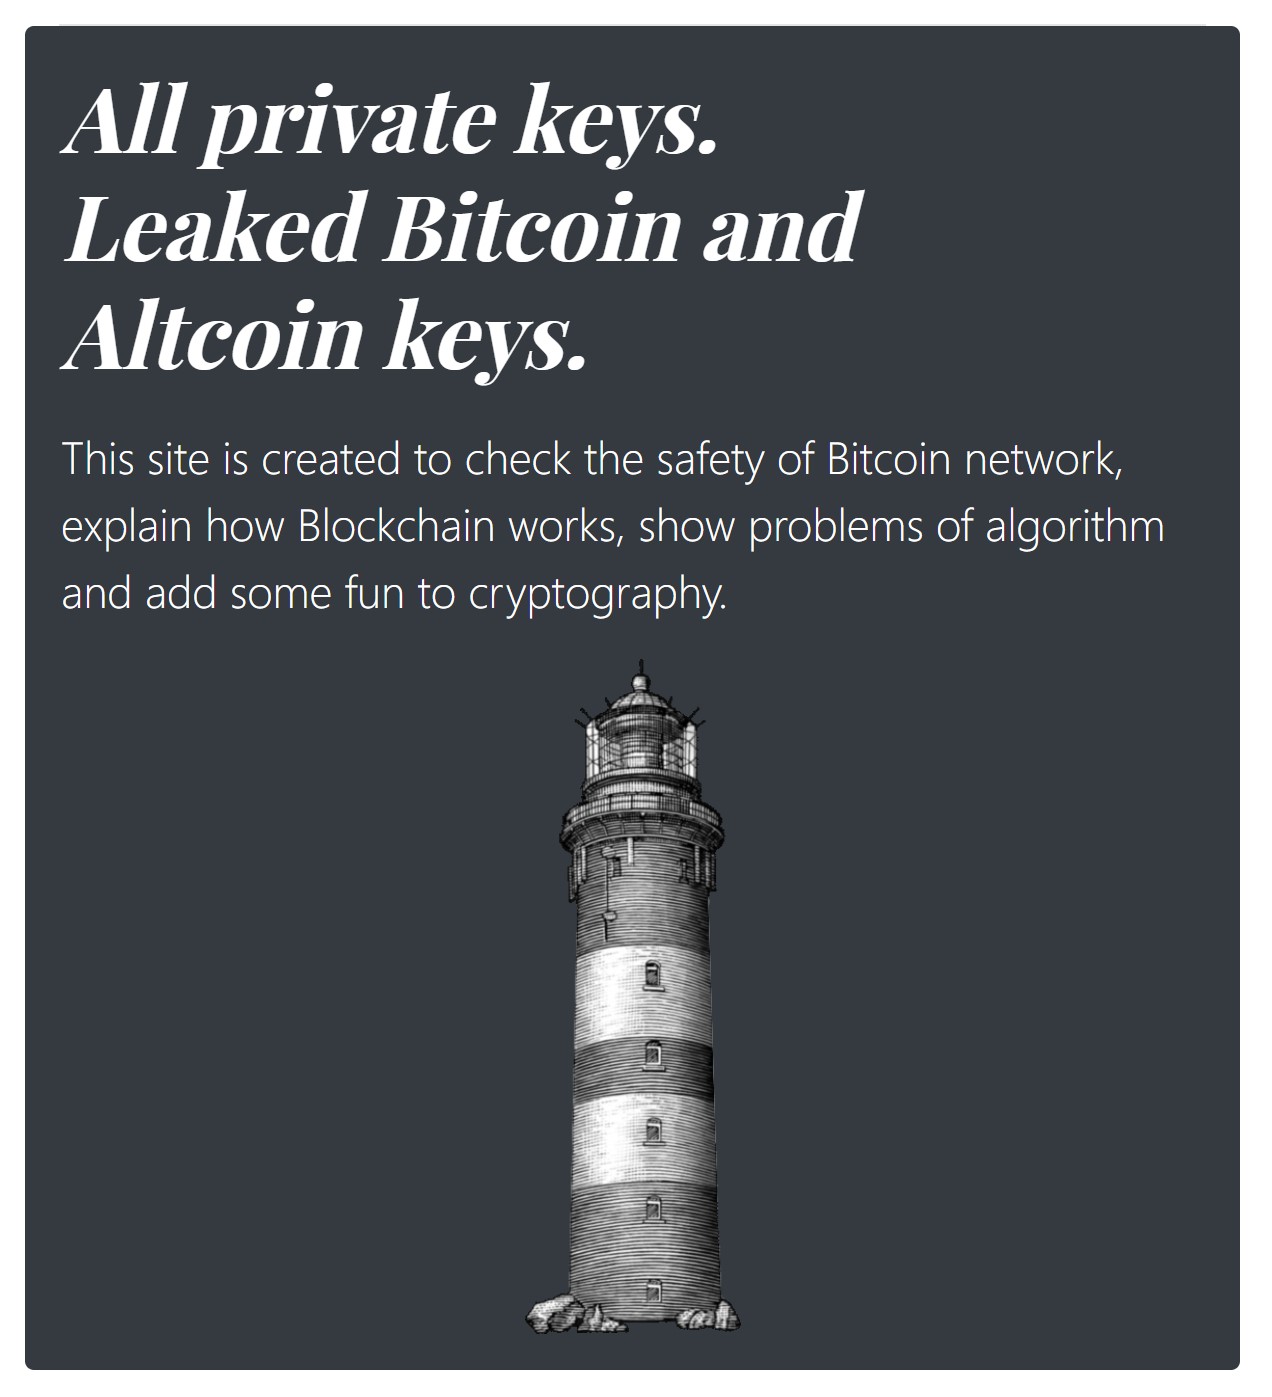 All Private Keys.jpg